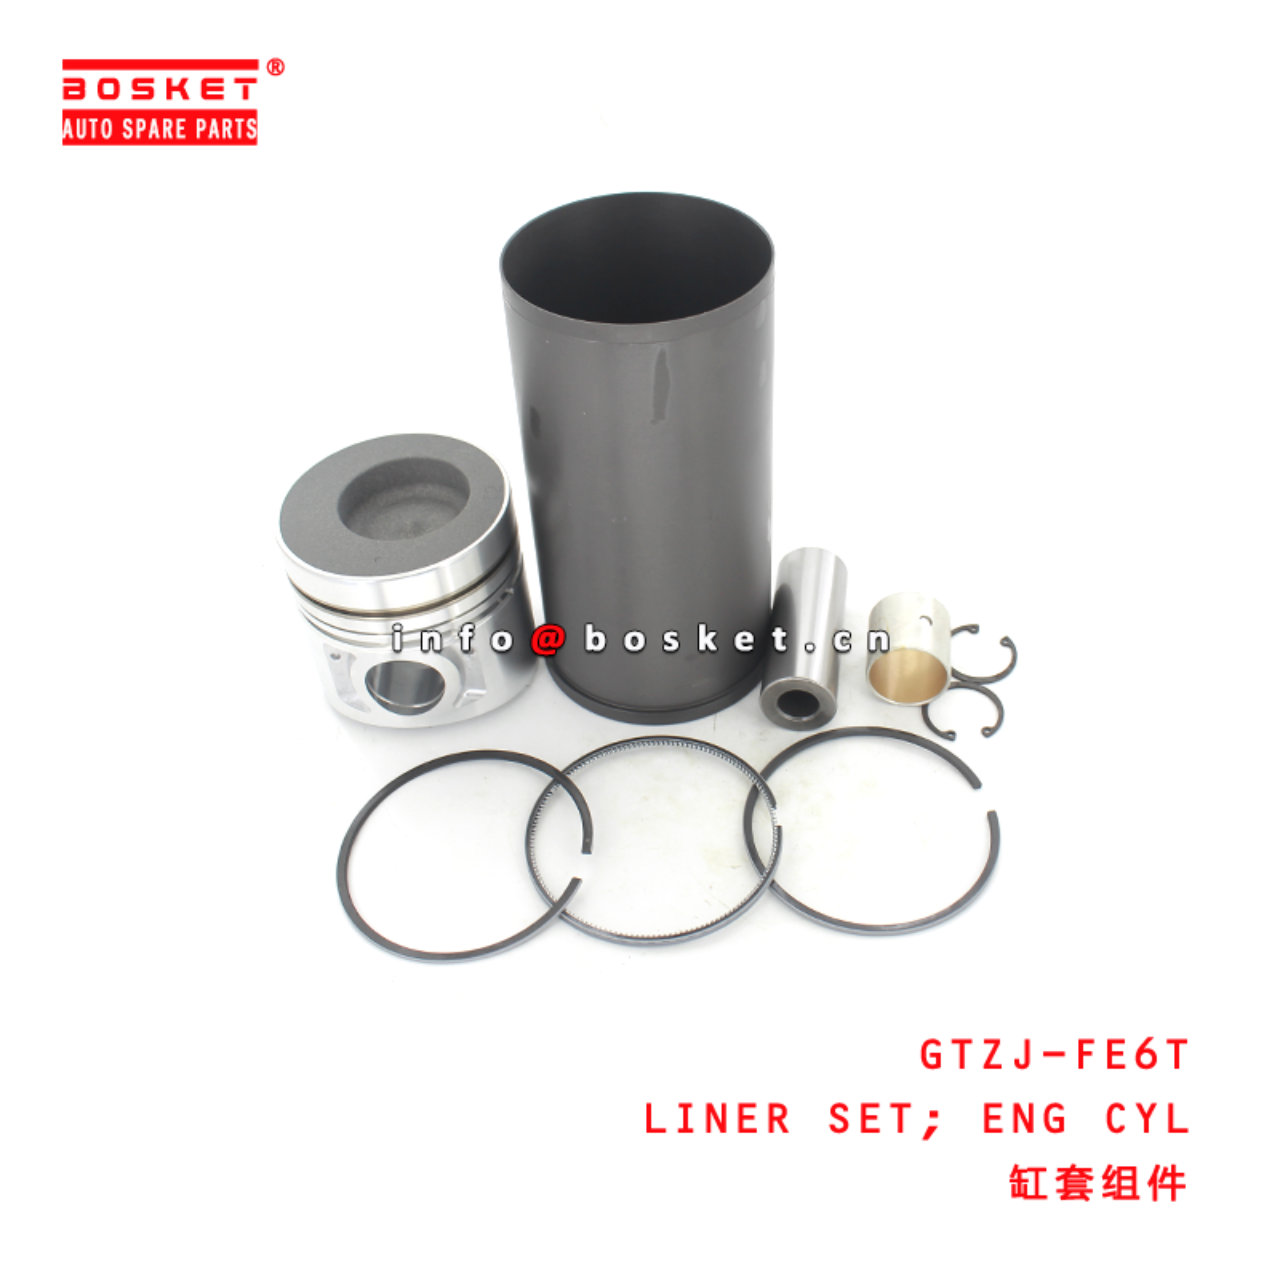 GTZJ-FE6T Engine Cylinder Liner Set Suitable for ISUZU UD-NISSAN FE6T -12V